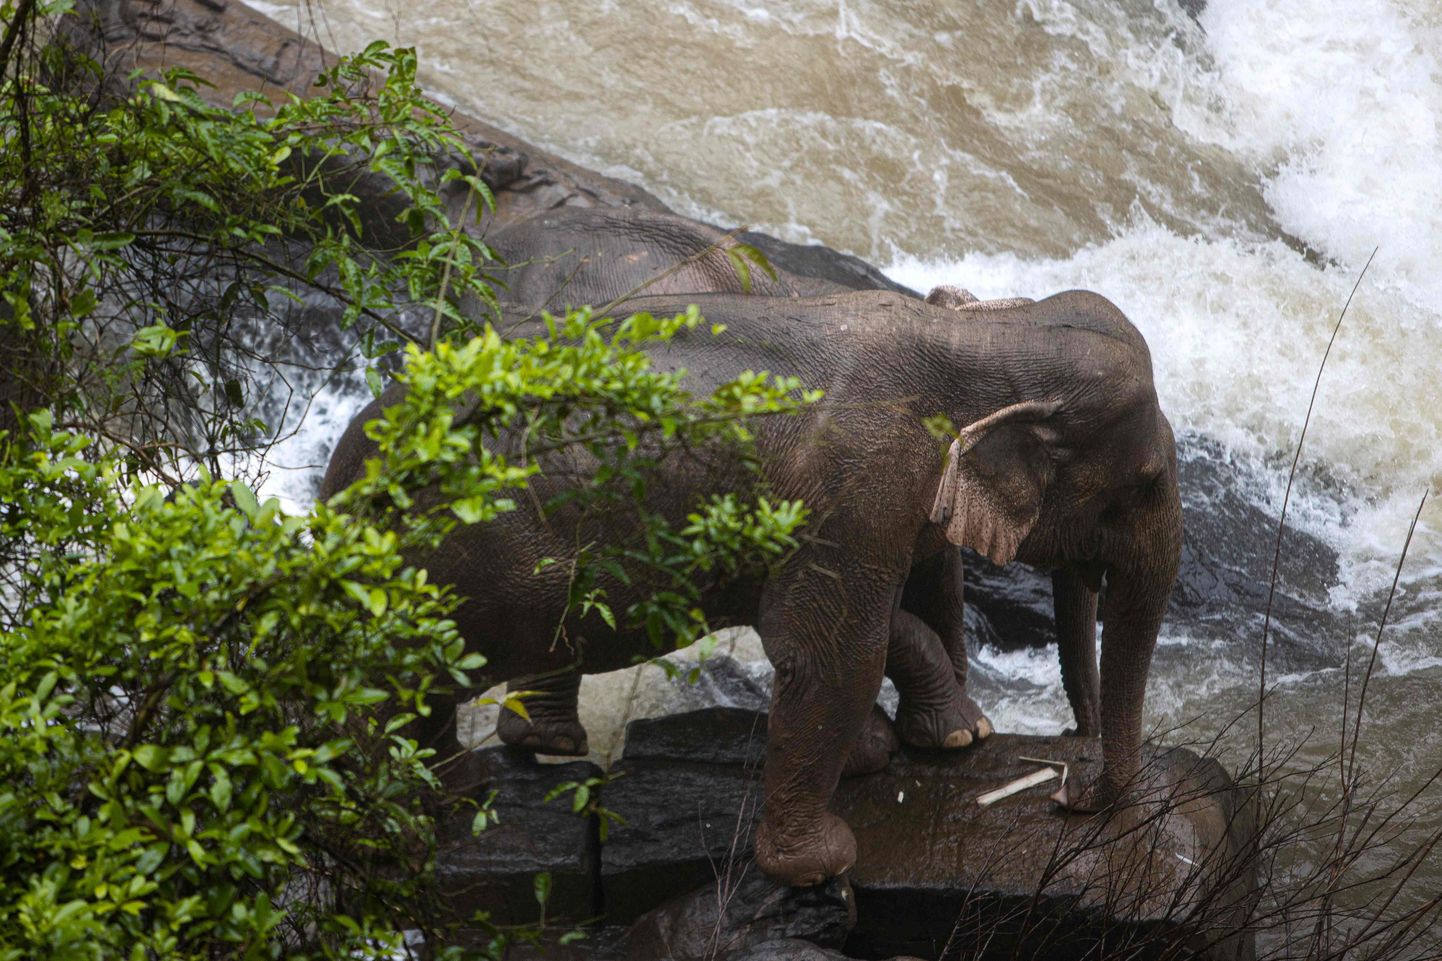 Mēģinot cits citu glābt, ūdenskritumā Taizemē gājuši bojā seši ziloņi. Varasiestādēm izdevās glābt divus netālu esošos dzīvniekus.